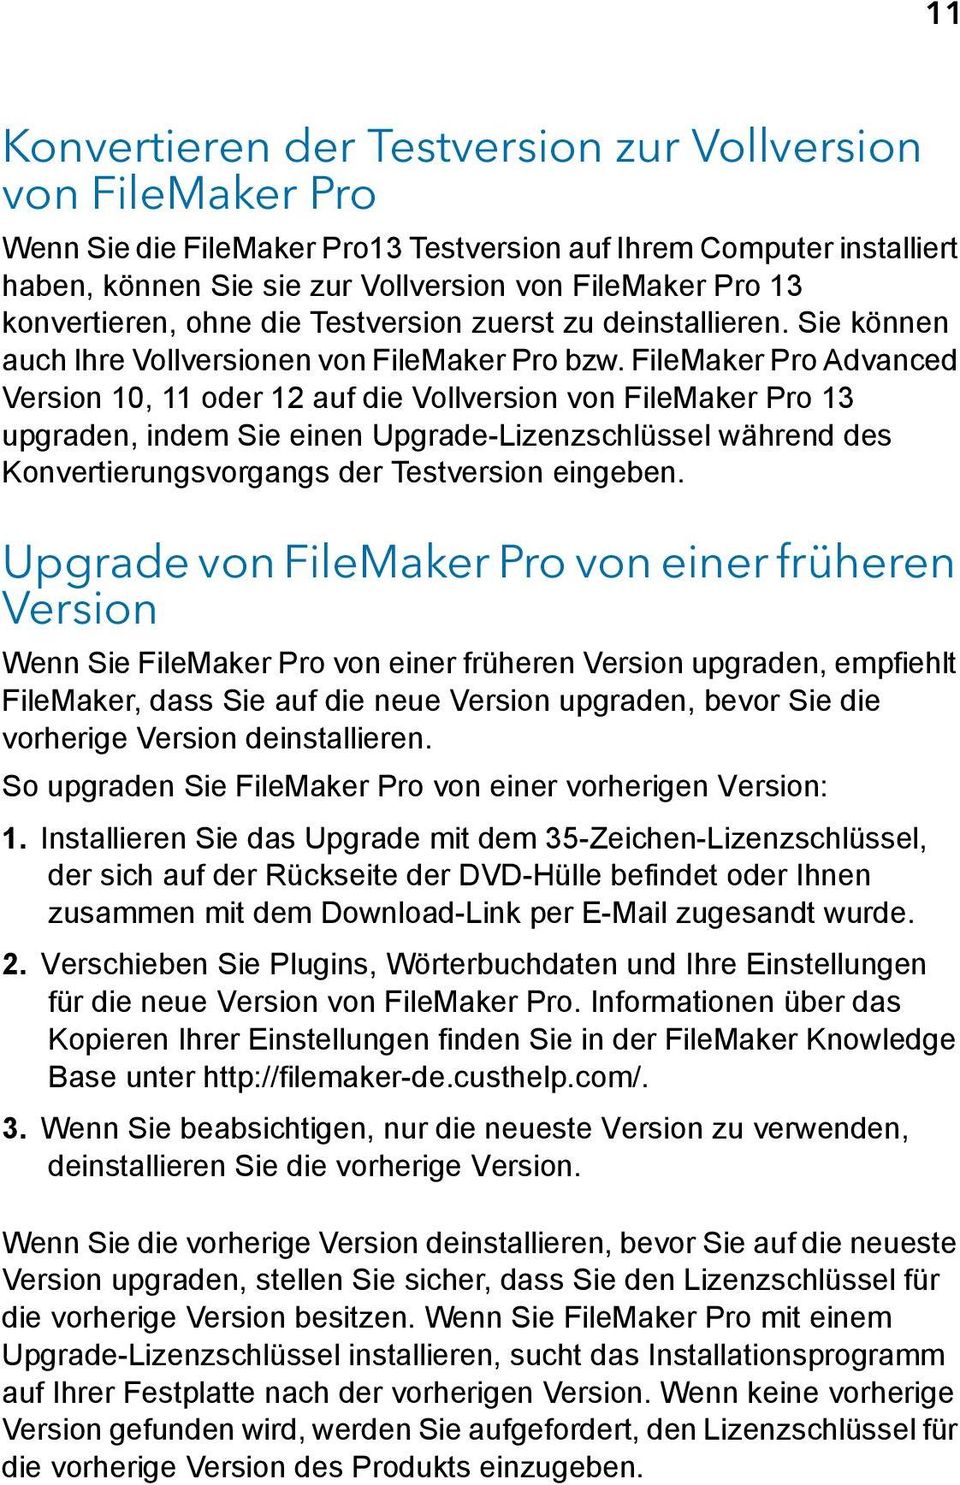 FileMaker Pro Advanced Version 10, 11 oder 12 auf die Vollversion von FileMaker Pro 13 upgraden, indem Sie einen Upgrade-Lizenzschlüssel während des Konvertierungsvorgangs der Testversion eingeben.